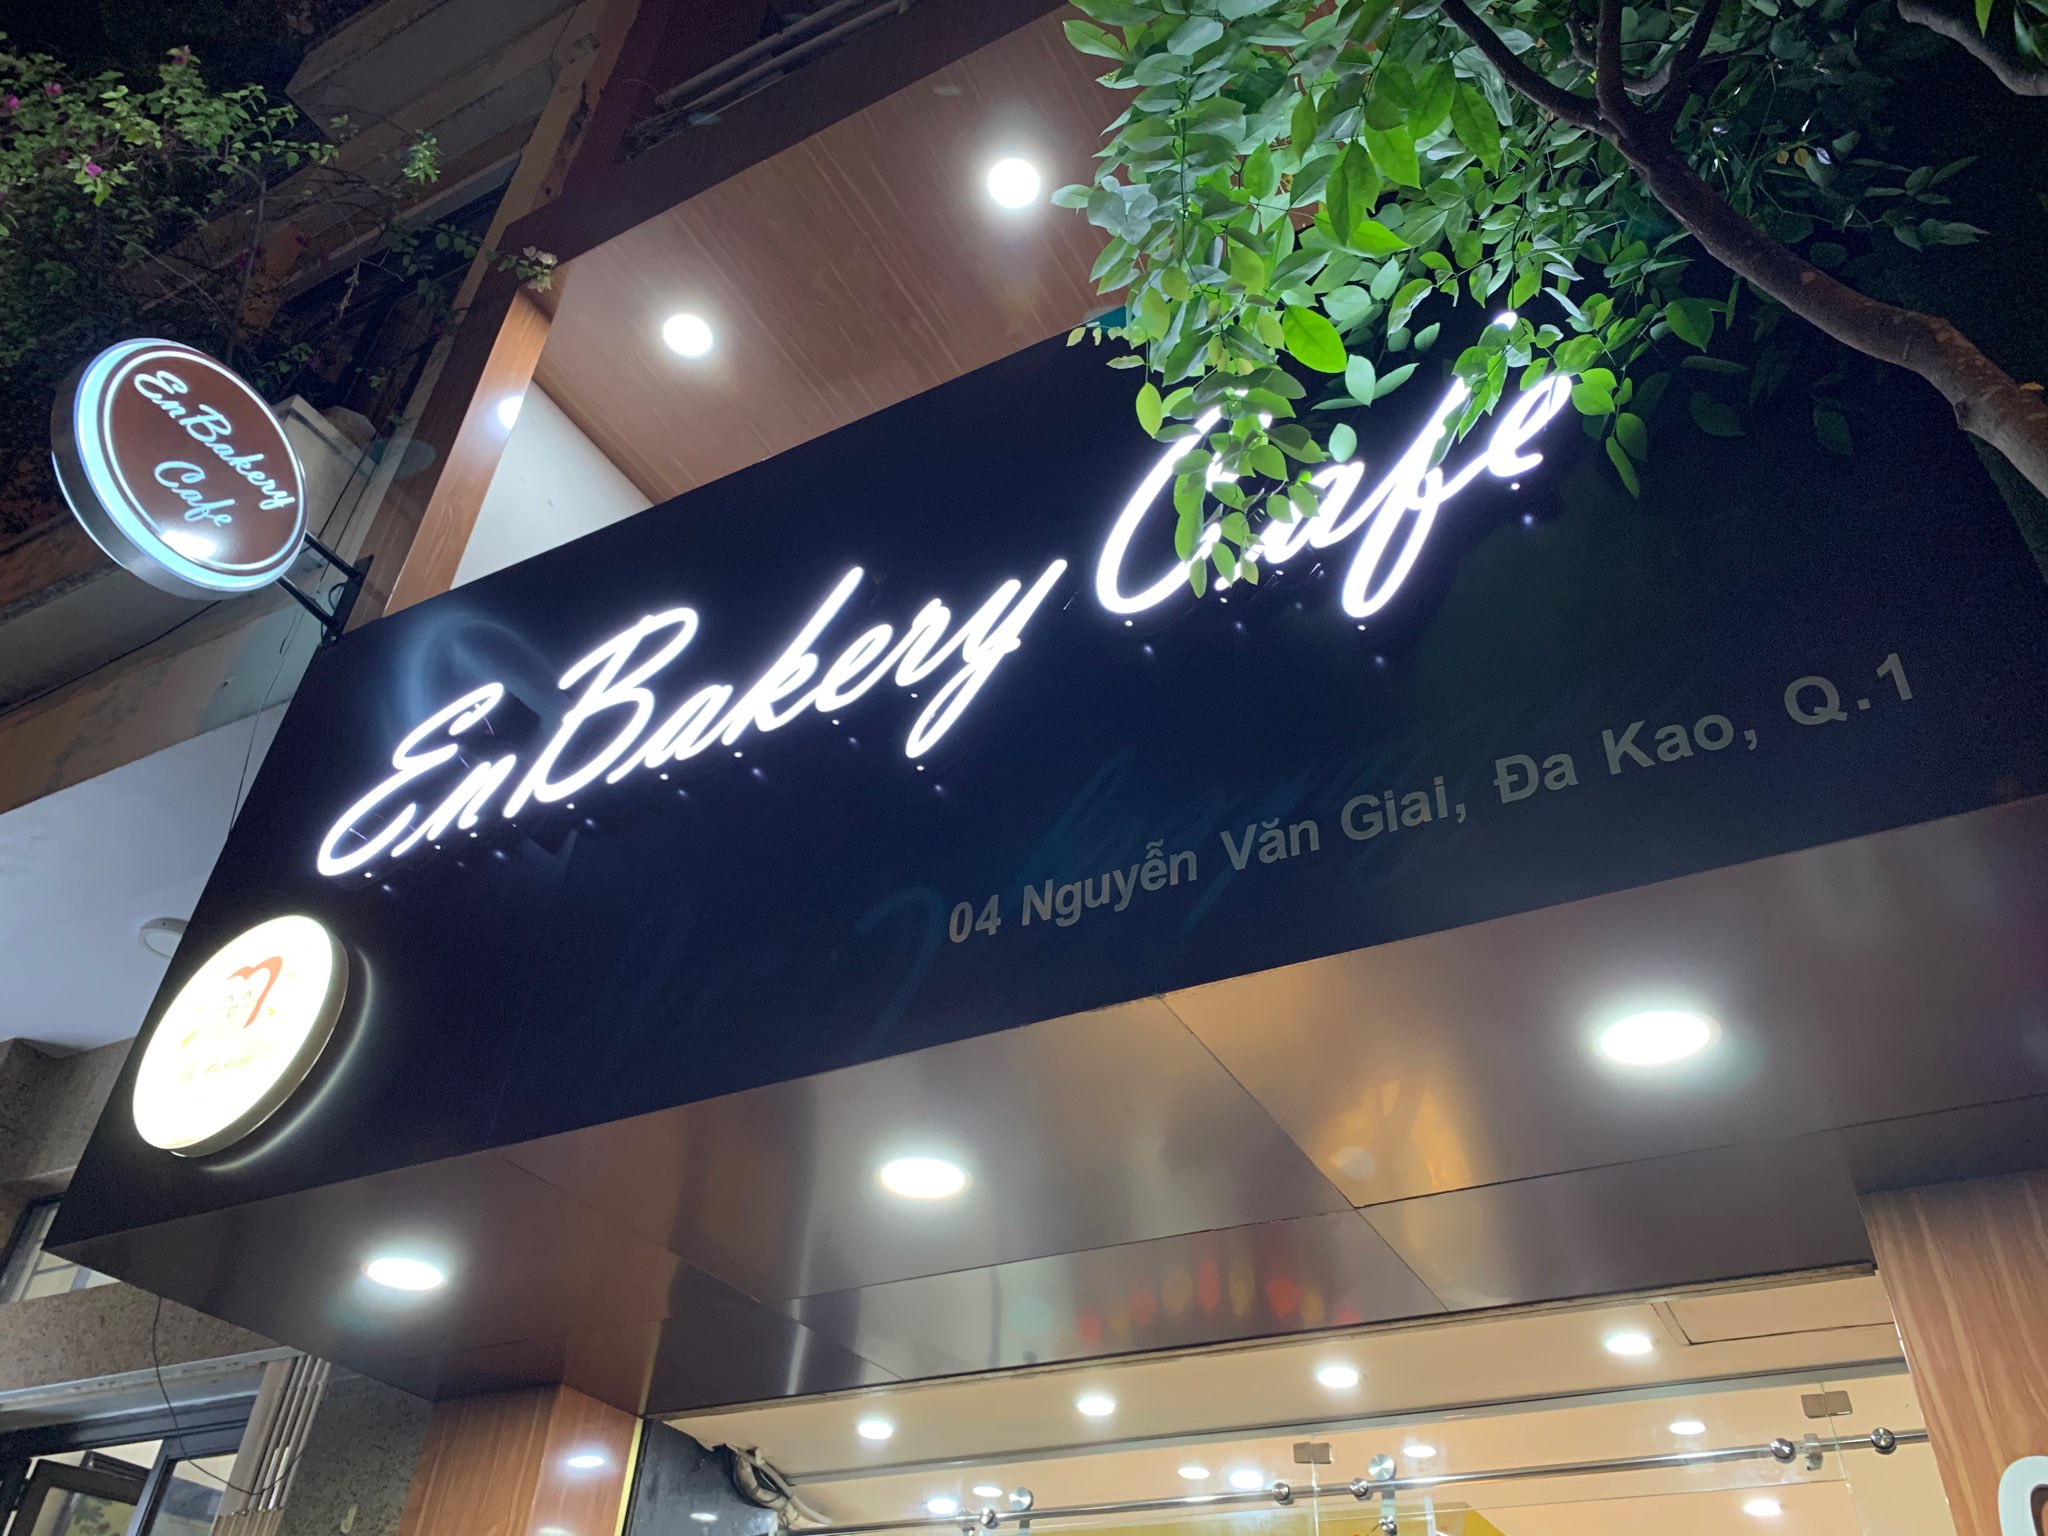 enbakerycafe-feature